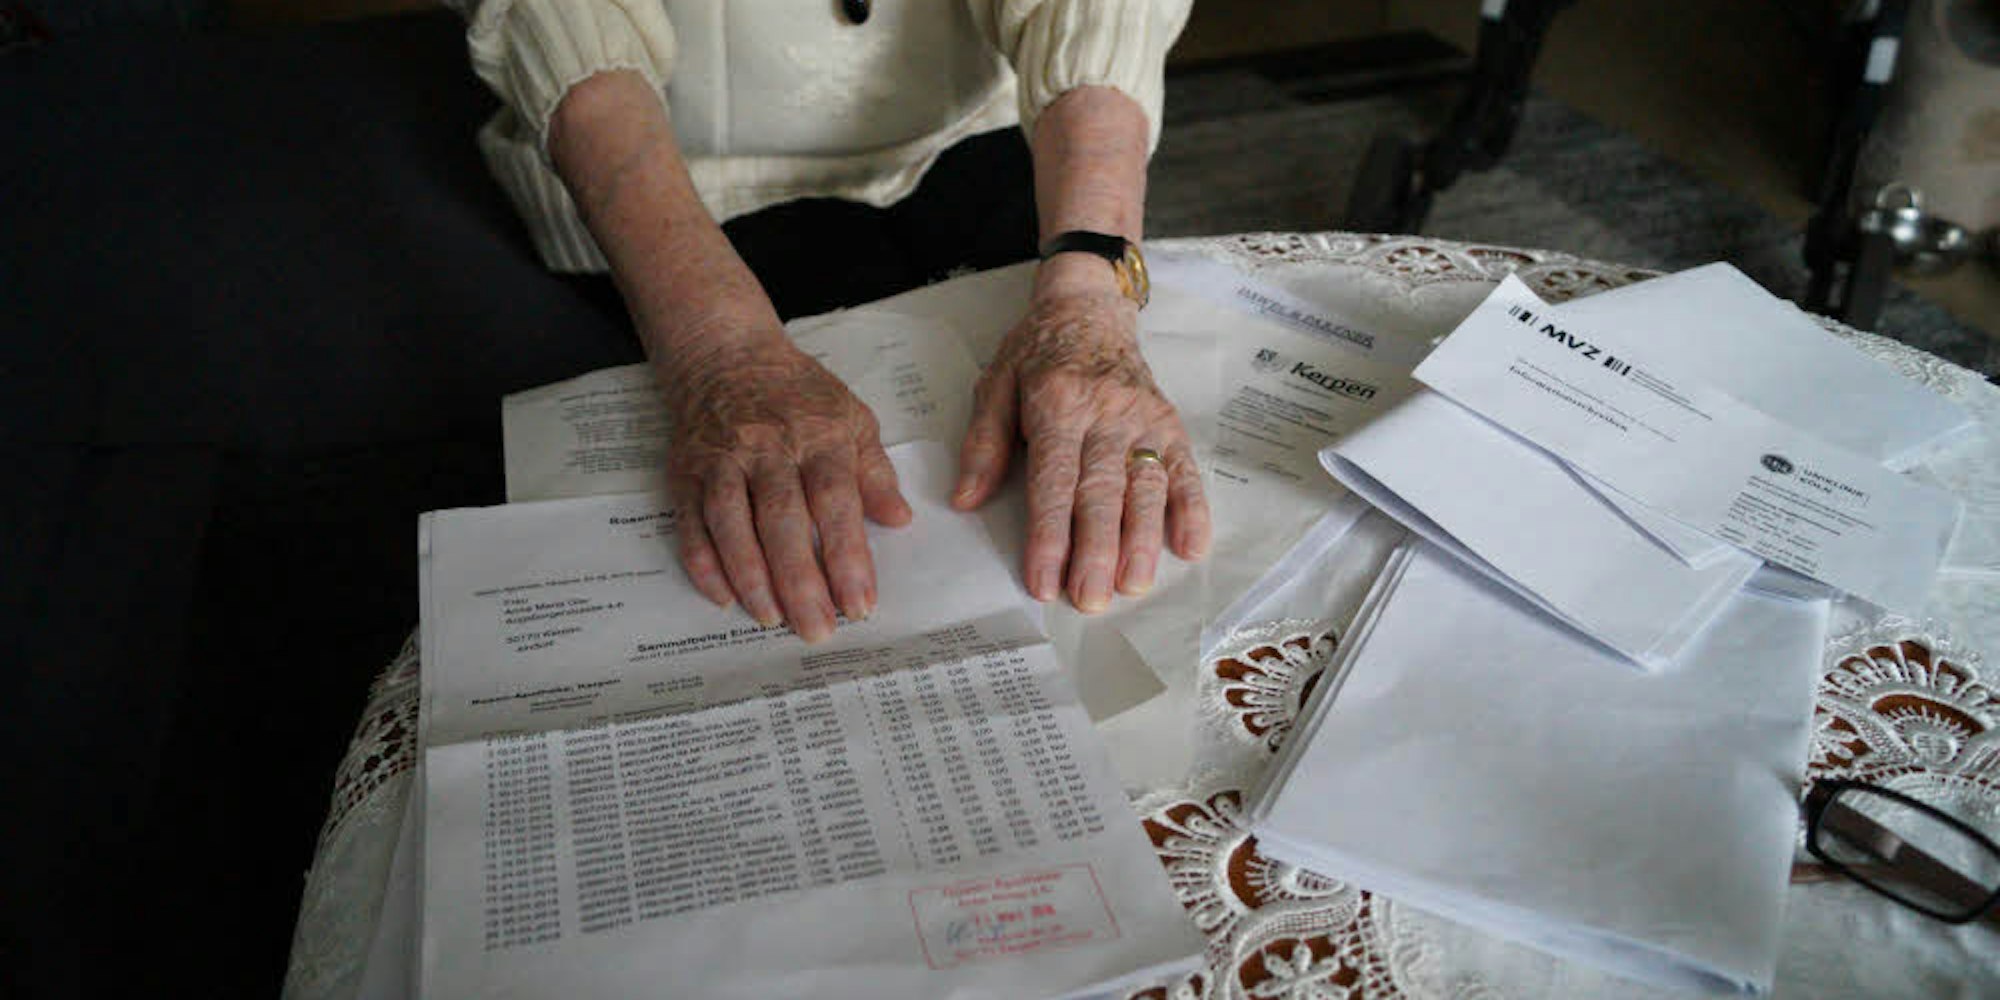 Rechnungen, Bescheide, Krankenakten liegen kreuz und quer auf dem Wohnzimmertisch von Anneliese Esser herum. Für die 85-Jährige ist es nicht leicht, den Überblick zu behalten.